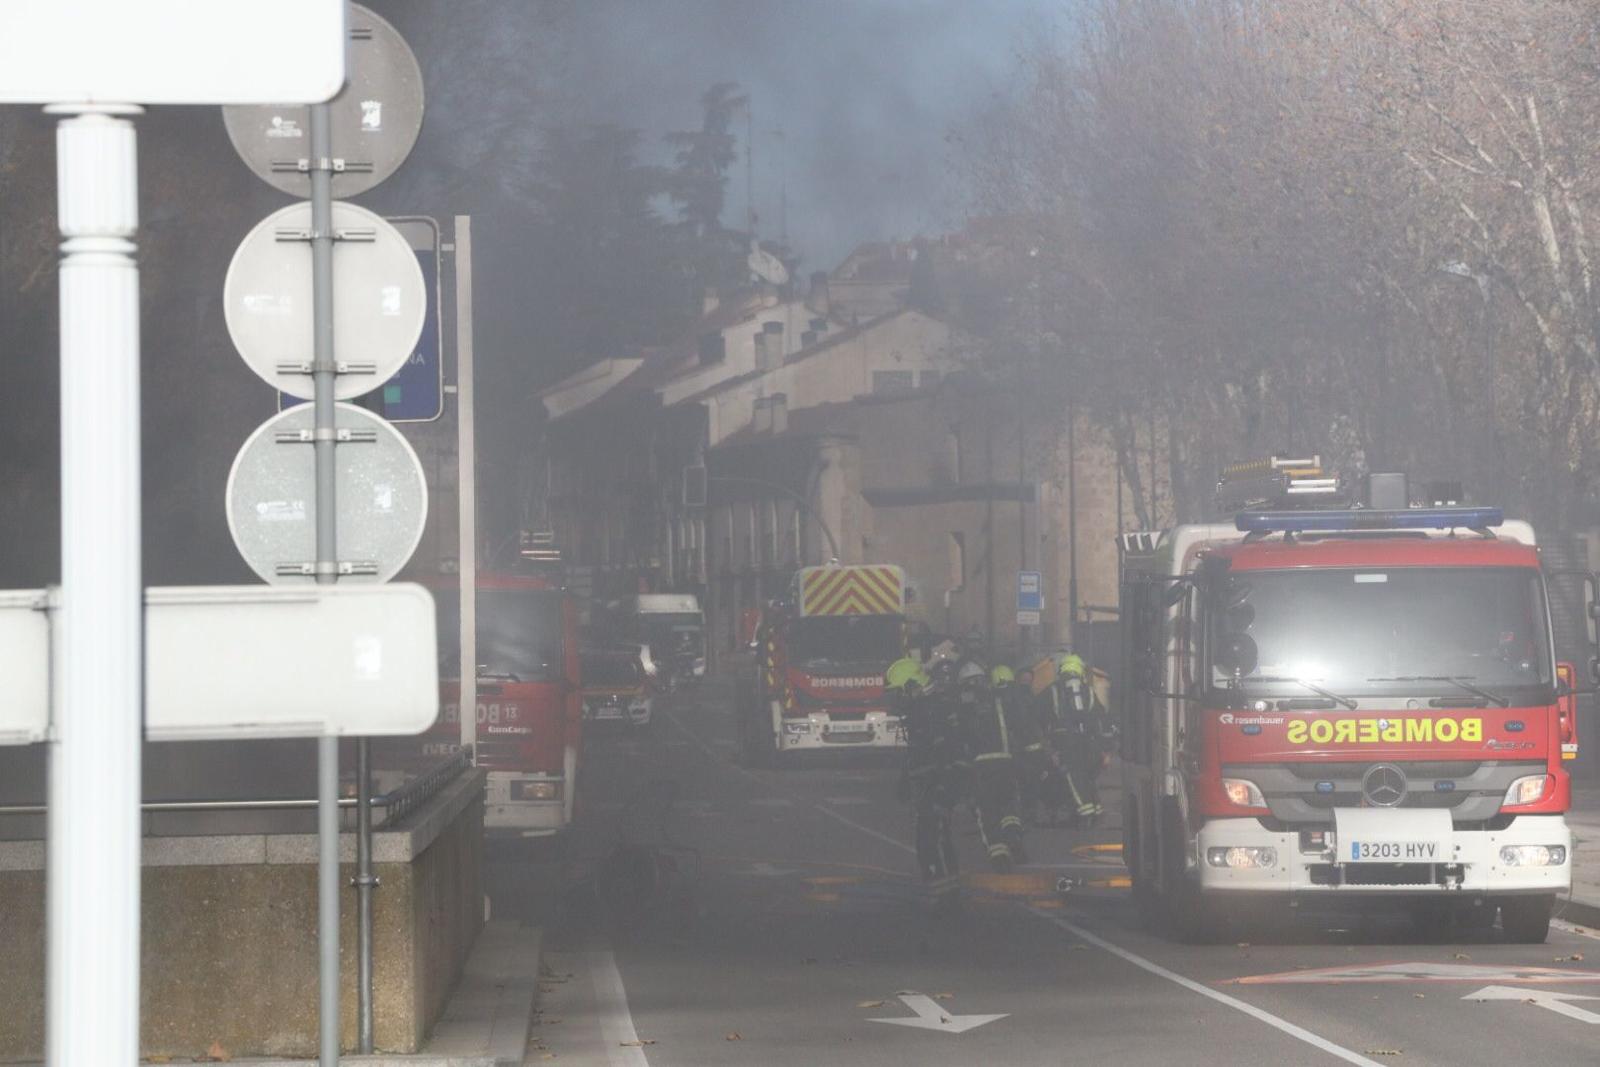 Un coche se incendia en el parking de Reyes de España. SALAMANCA24HORAS (18)